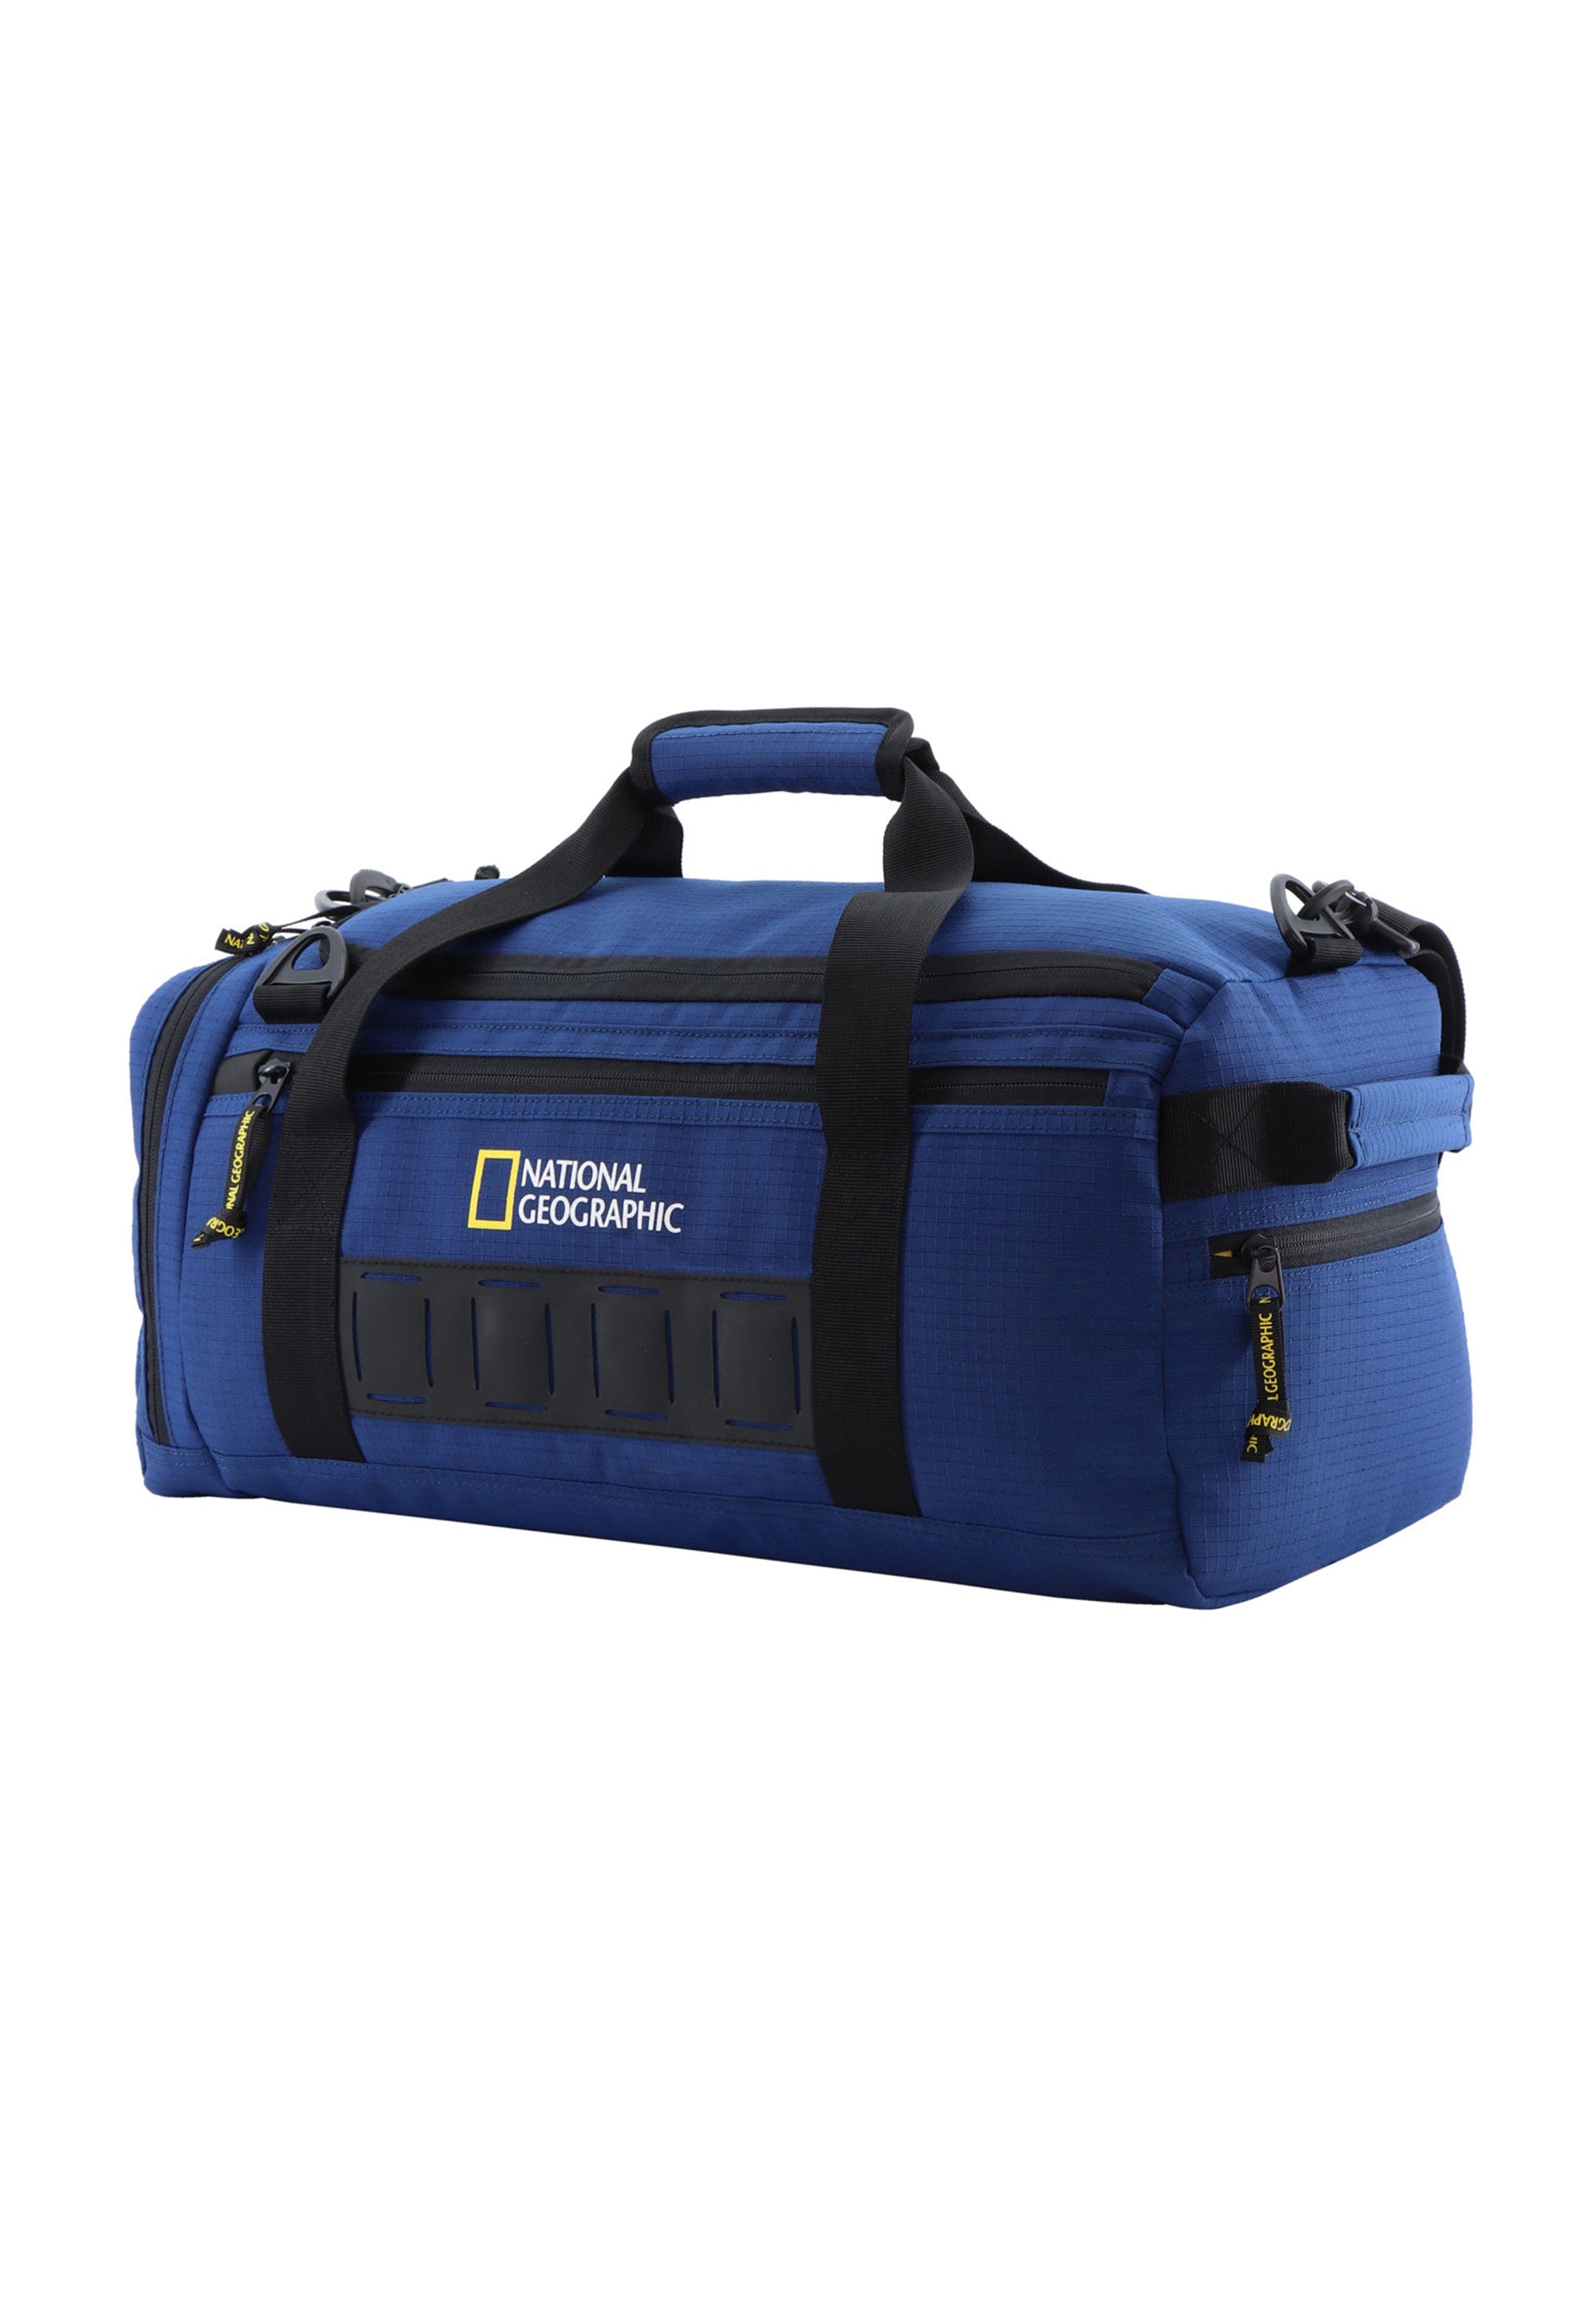 Reisetasche Sporttasche der Nat Geo Serie Explorer 3 in blau aus recycelten PET-Flaschen